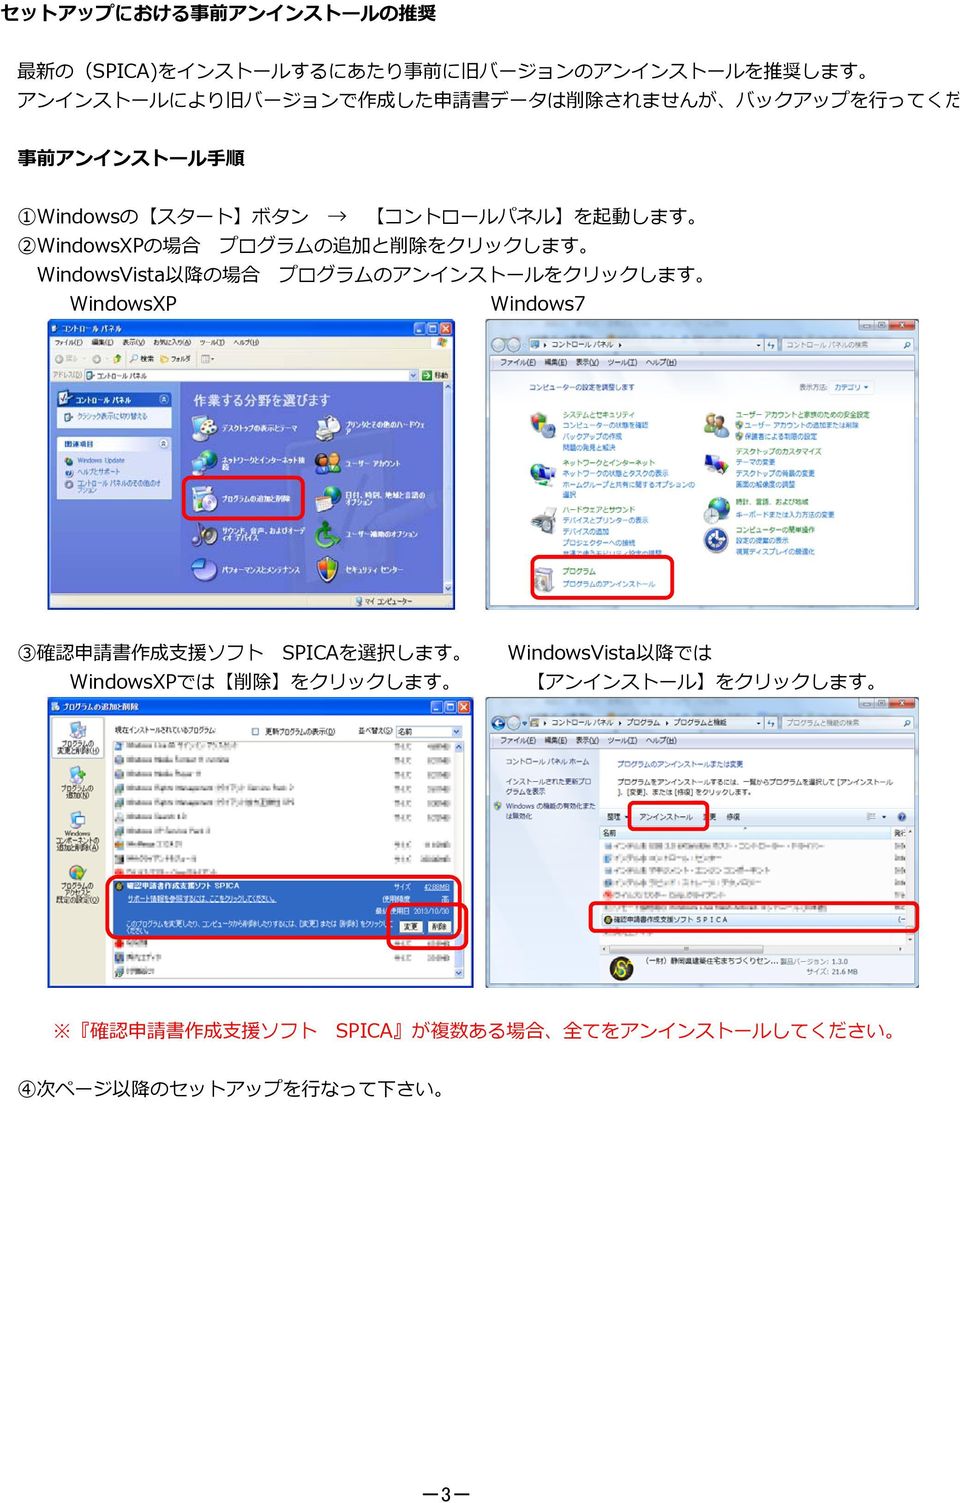 WindowsVista 以 降 の 場 合 プログラムのアンインストールをクリックします WindowsXP Windows7 3 確 認 申 請 書 作 成 援 ソフト SPICAを 選 択 します WindowsVista 以 降 では